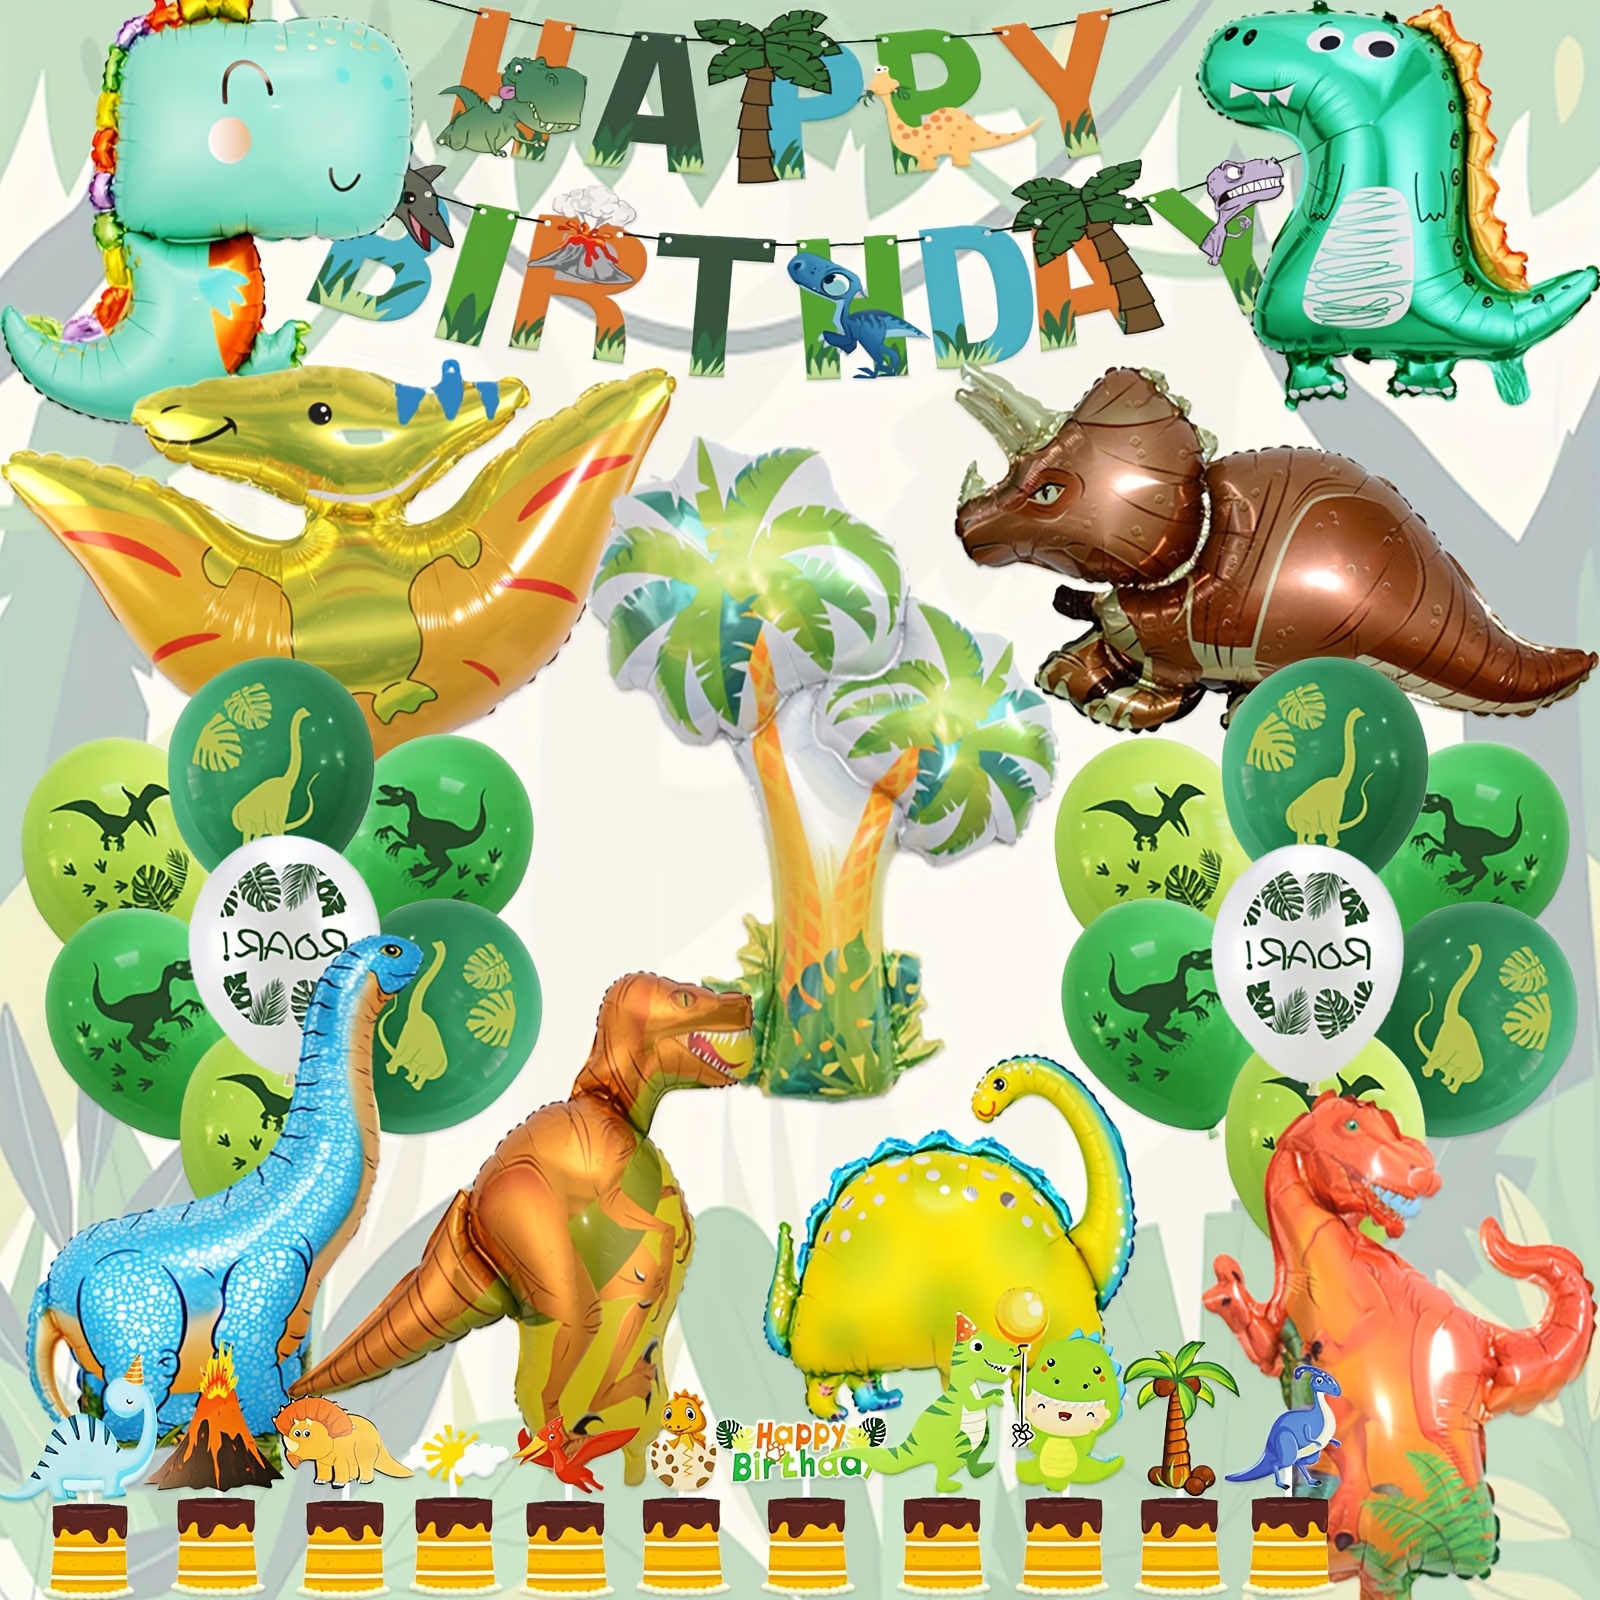 El número 2 en forma de dinosaurio es adecuado para adornos de una fiesta  de cumpleaños al estilo de los dinosaurios.